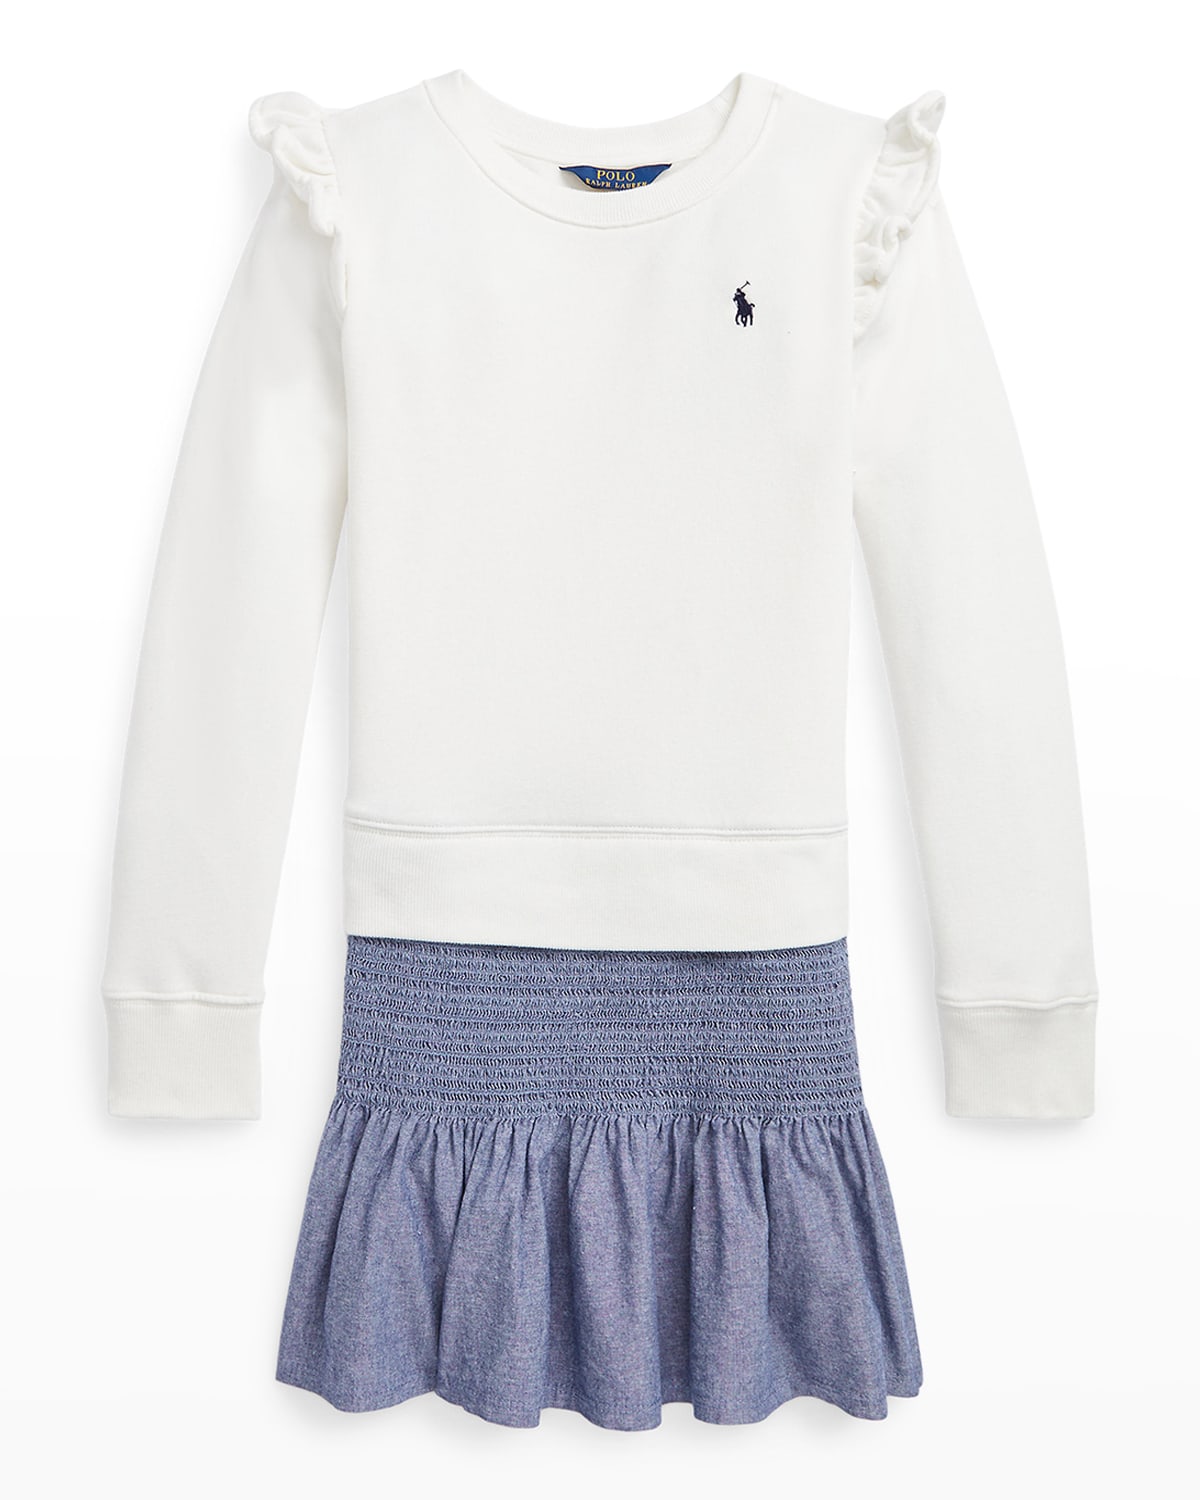 Girl's Chambray & Fleece Sweatshirt Dress, Size S-L